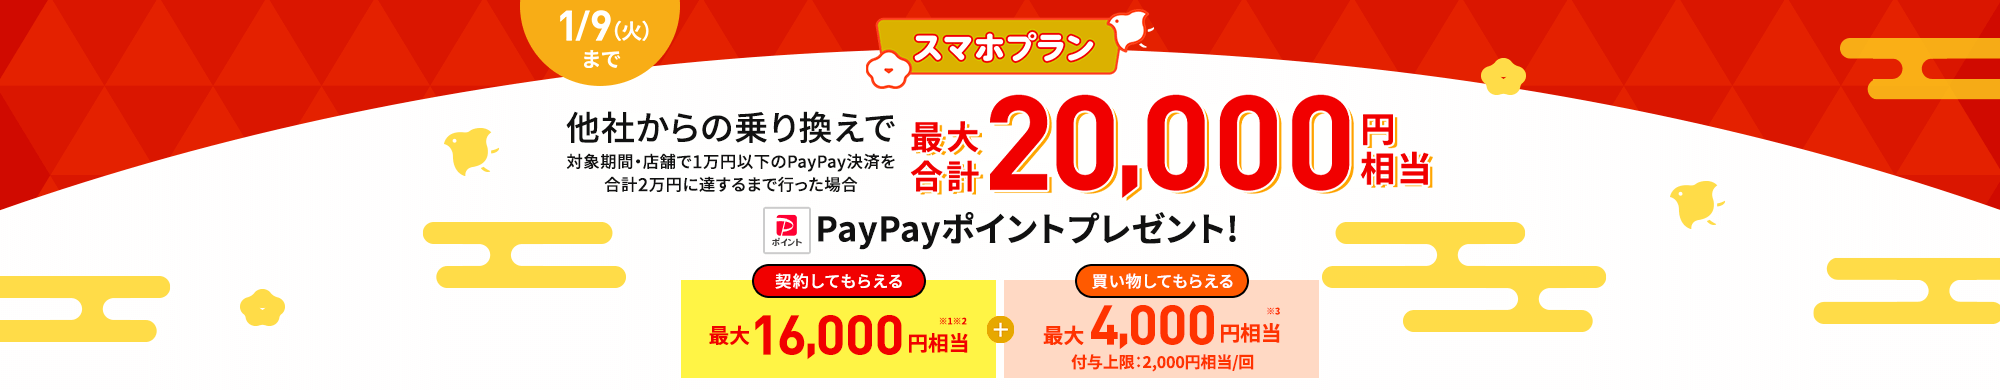 キャンペーン期間中にLINEMOの「スマホプラン」を契約すると、他社からの乗り換えなら16,000円相当、新しい番号で契約なら8,000円相当のPayPayポイントをプレゼントします。